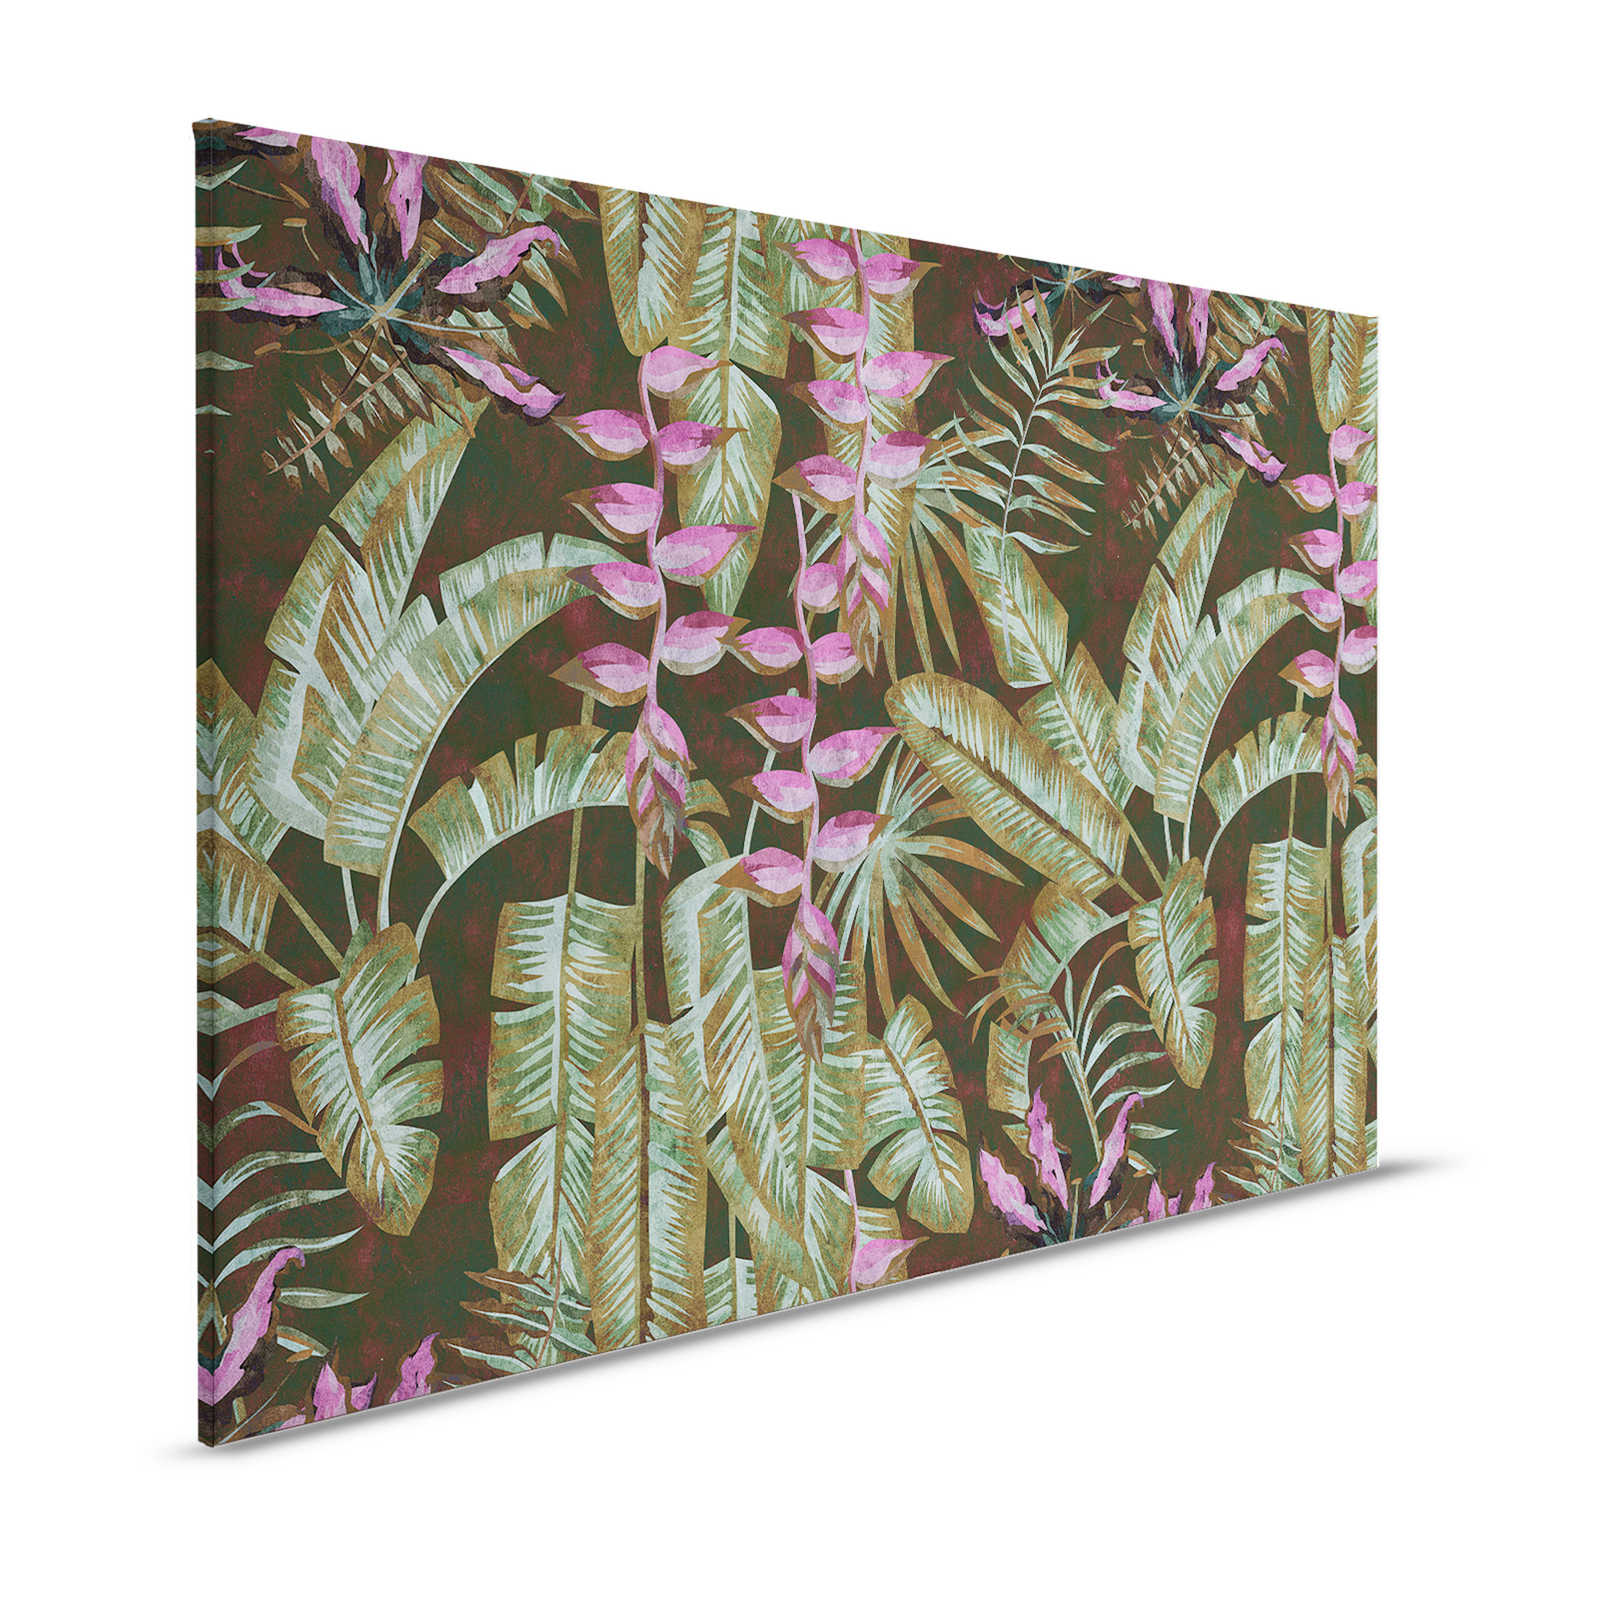 Tropicana 1 - Toile jungle avec feuilles de bananier & fougères - 1,20 m x 0,80 m
